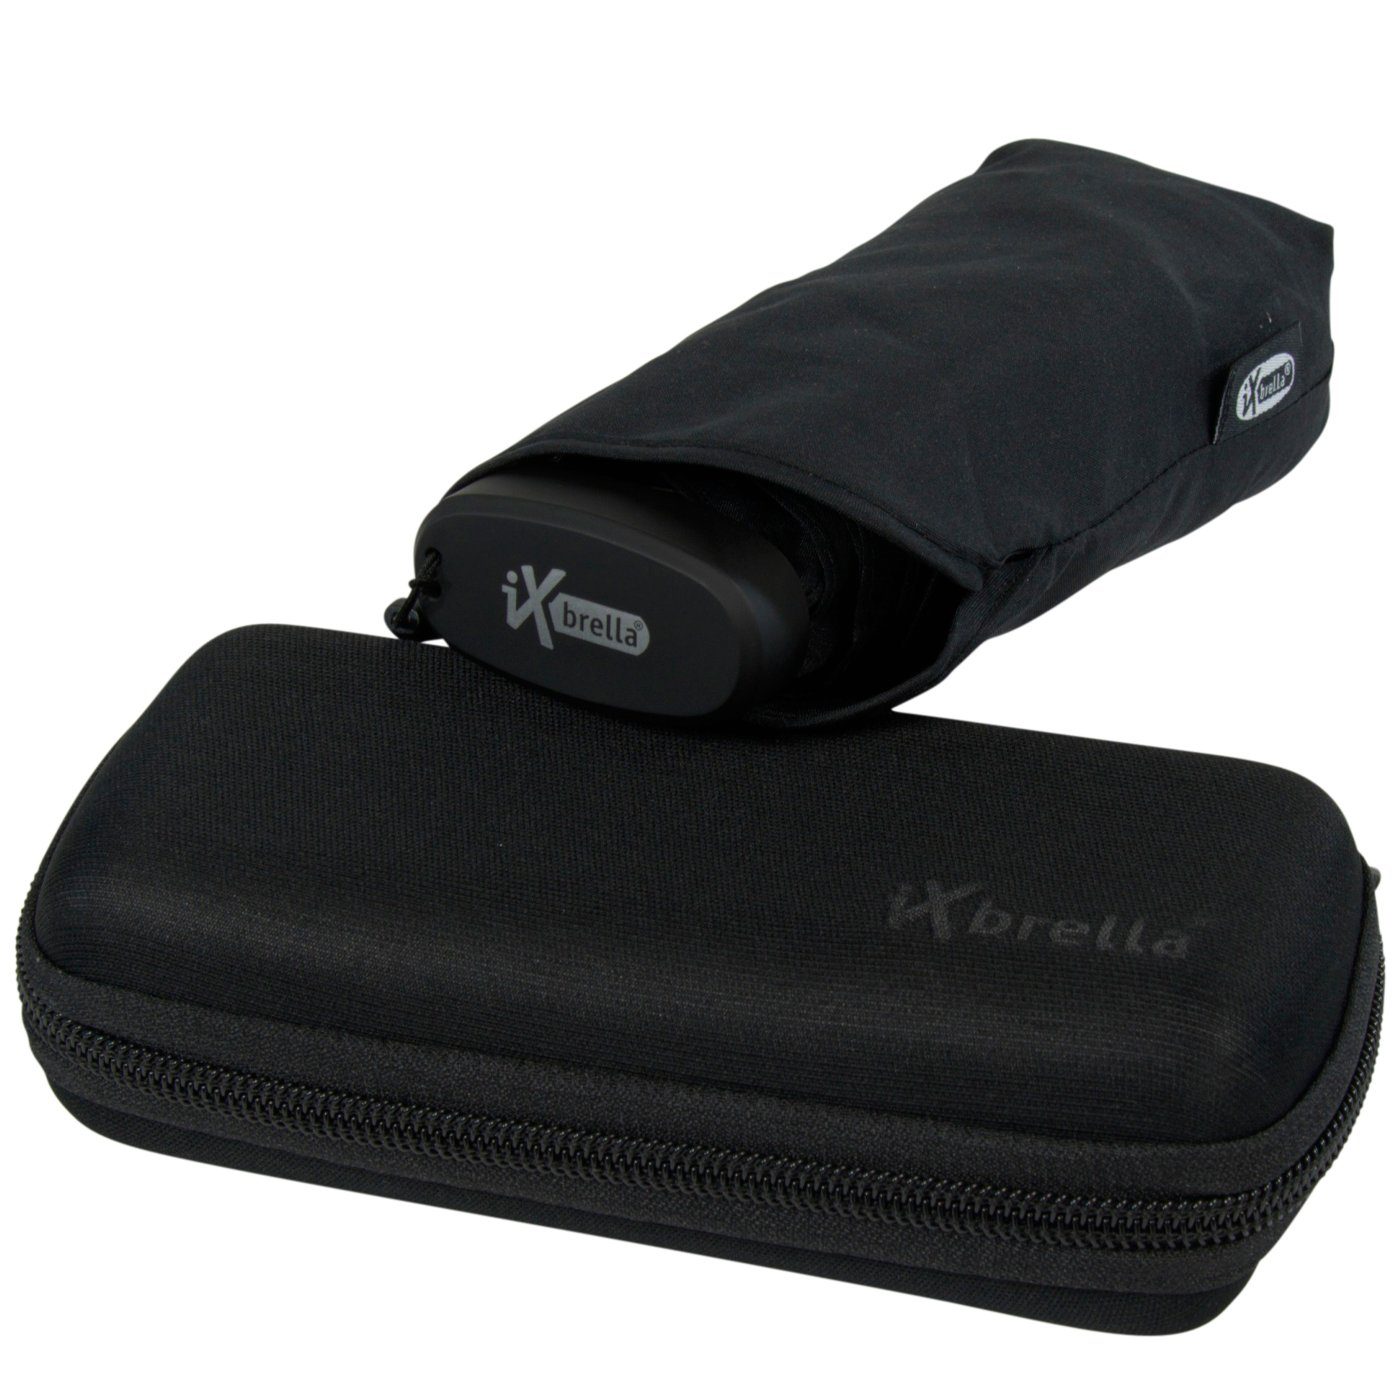 Schirm ultra-klein, - cm Taschenregenschirm im Format, Ultra winziger schwarz Softcase-Etui Mini 15 iX-brella Handy mit